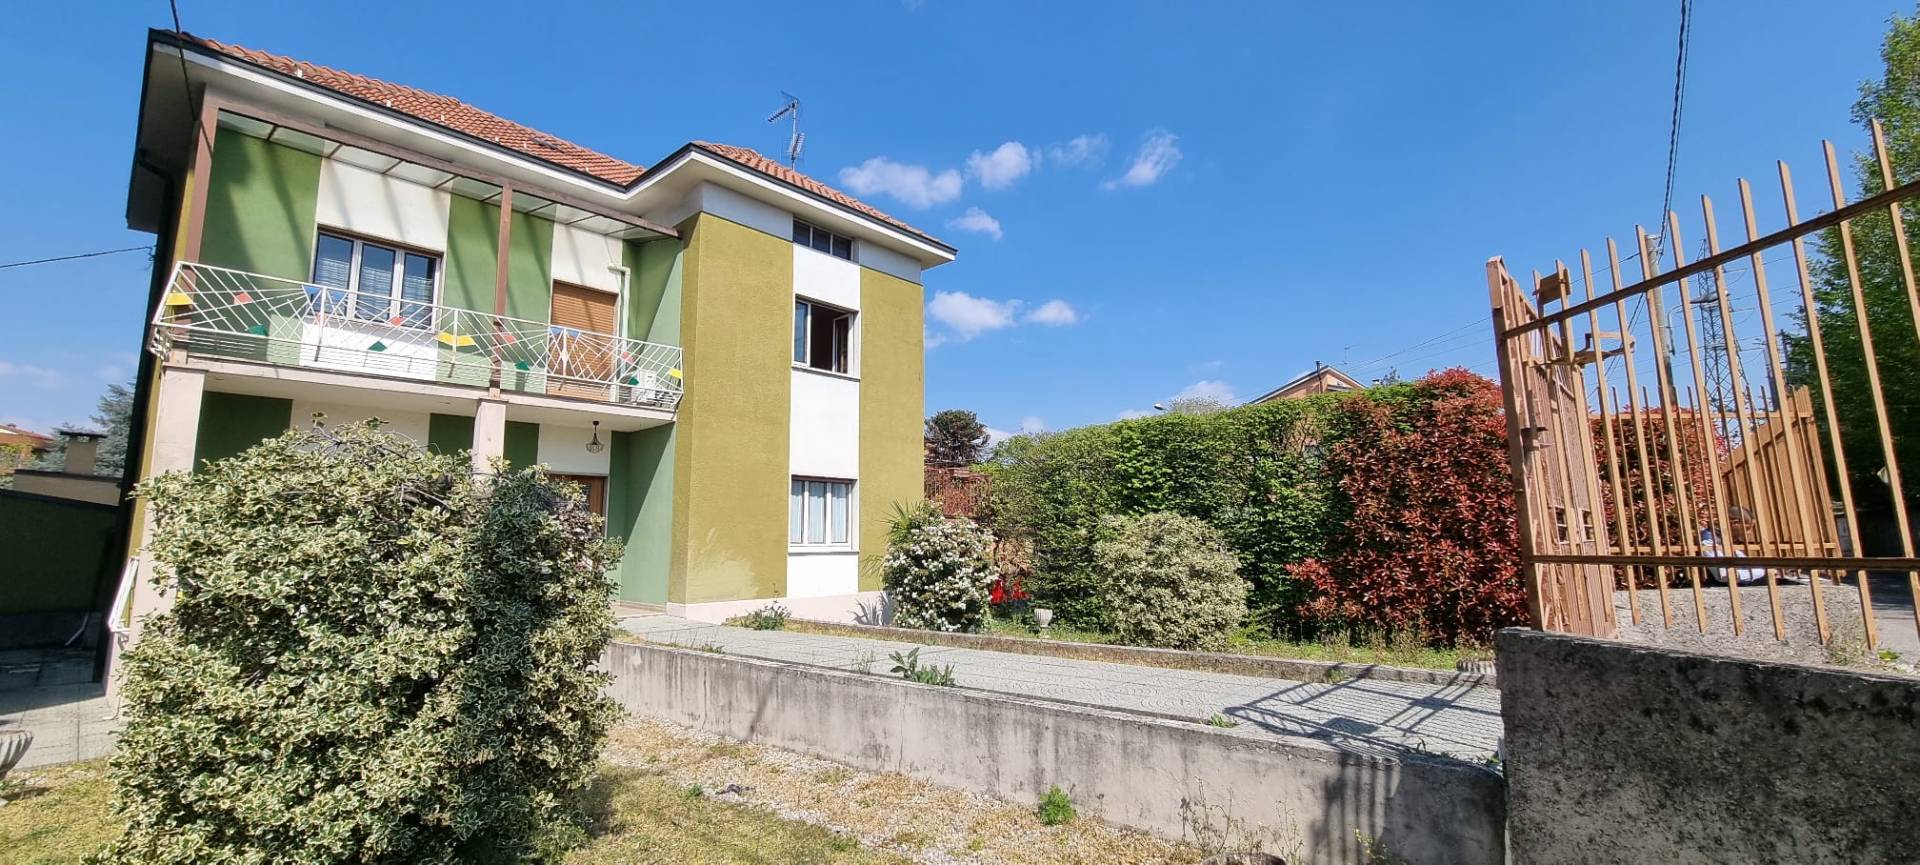 Villa in vendita a Capriate San Gervasio, 3 locali, prezzo € 135.000 | PortaleAgenzieImmobiliari.it